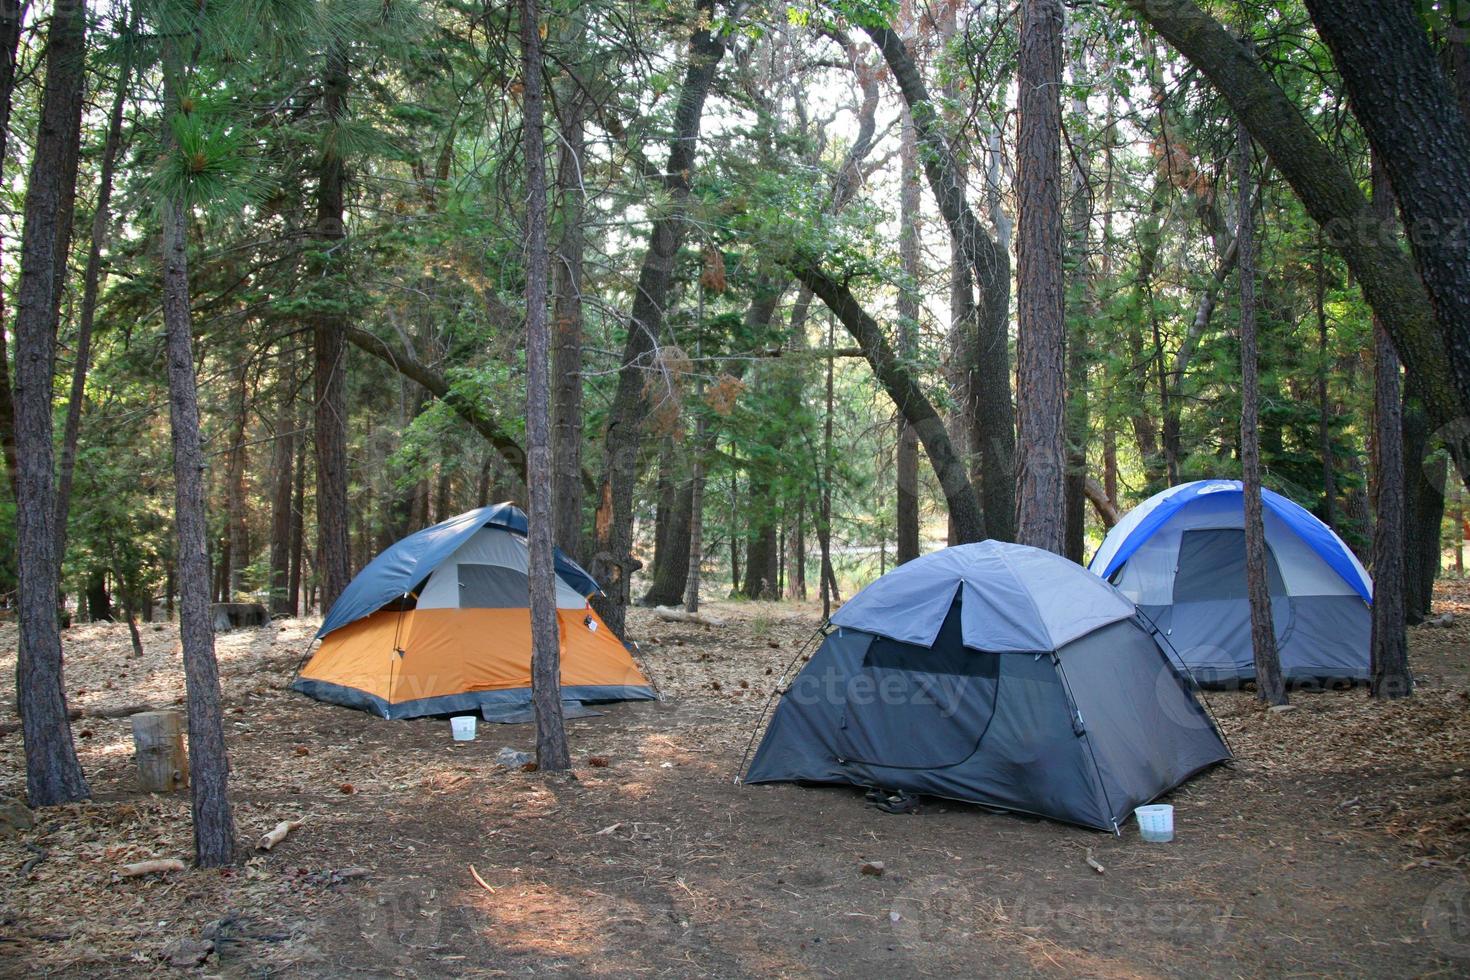 drei Zelte in den üppig grünen Wäldern im Freien aufgestellt foto